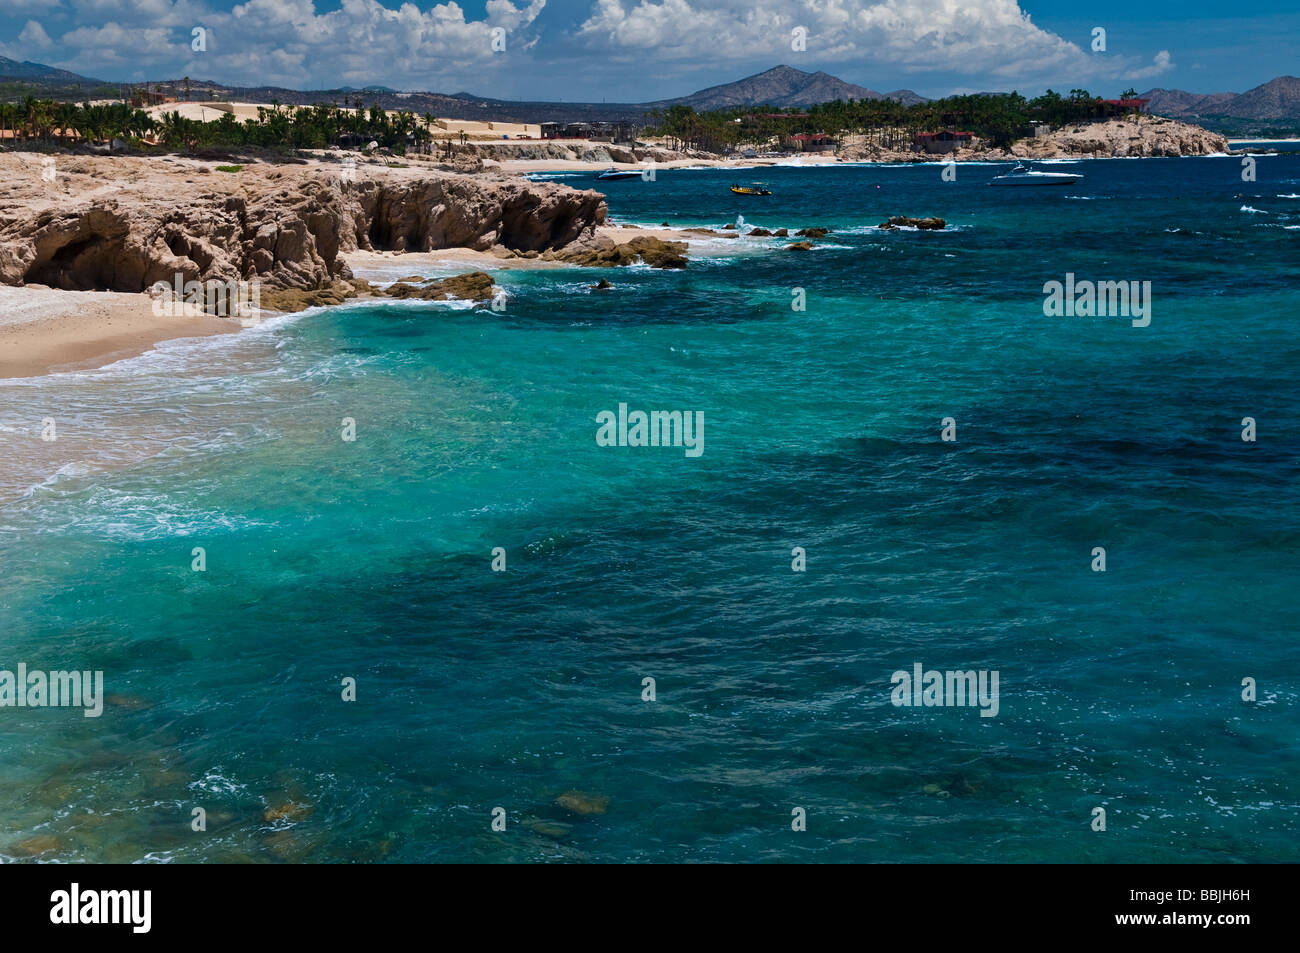 Chileno Beach, San Jose del Cabo, Baja California Sur, Mexico Stock Photo